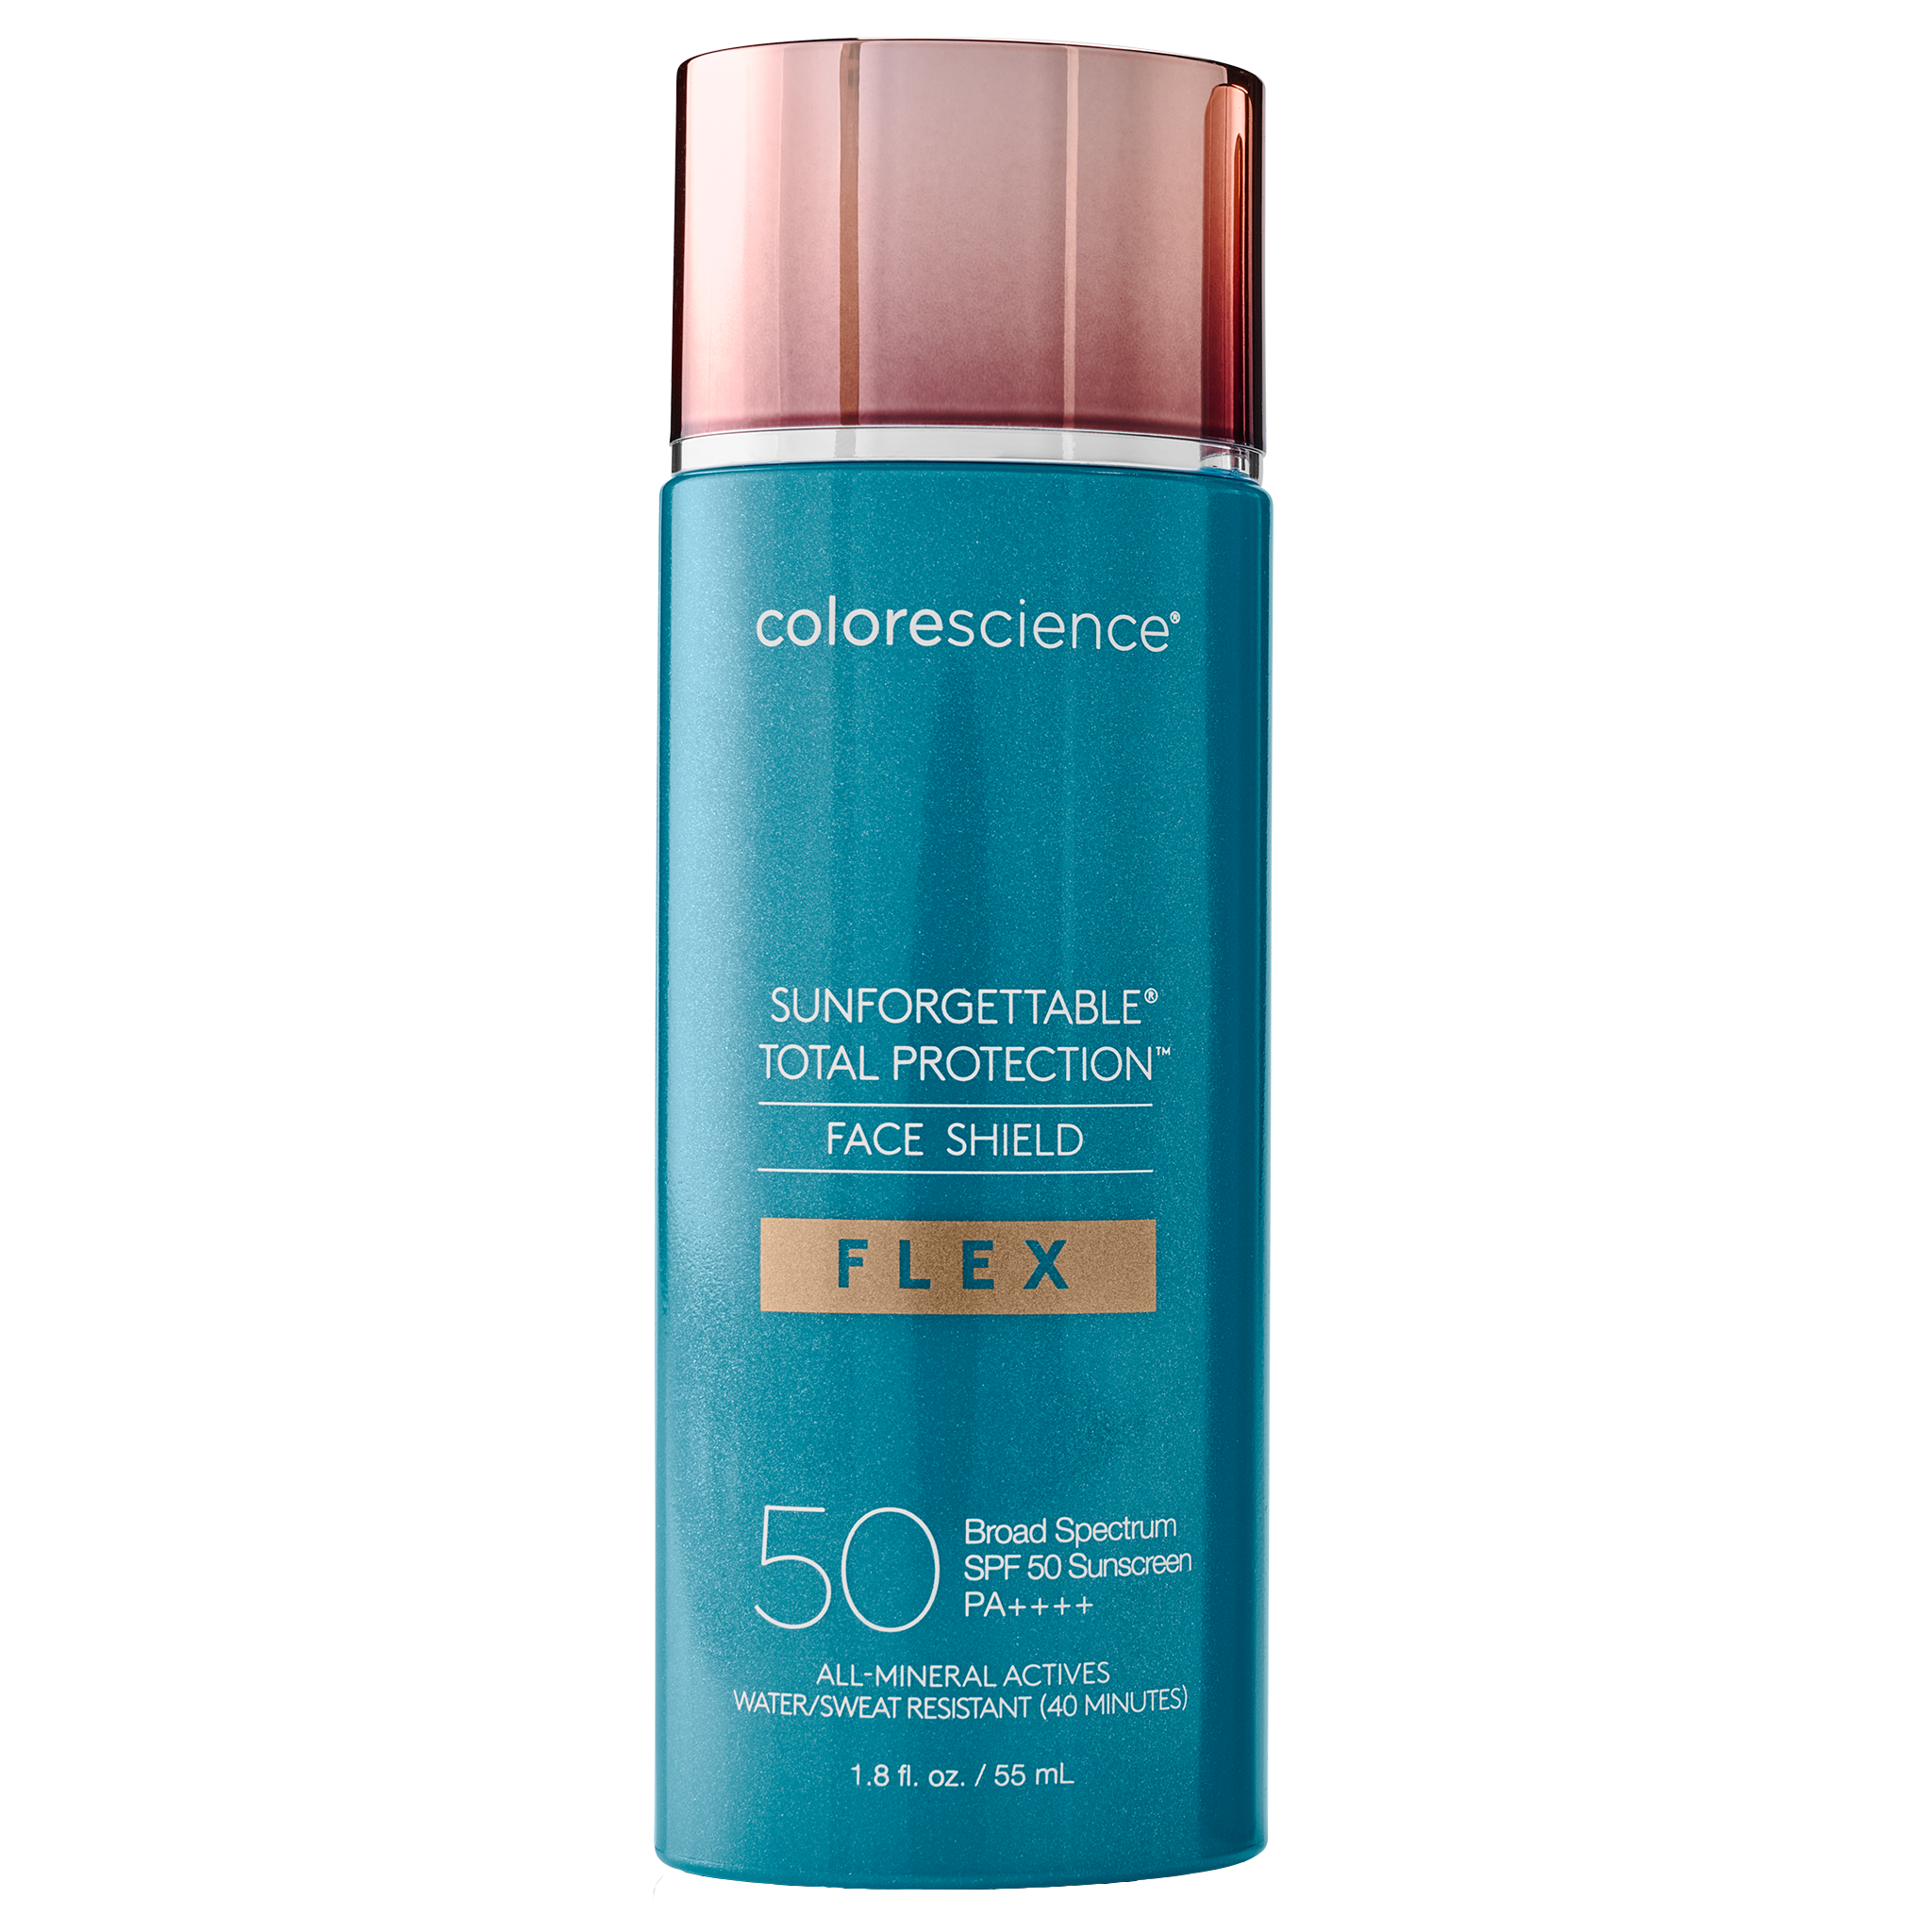 Face Shield Flex SPF 50: Tinted Matte Sunscreen